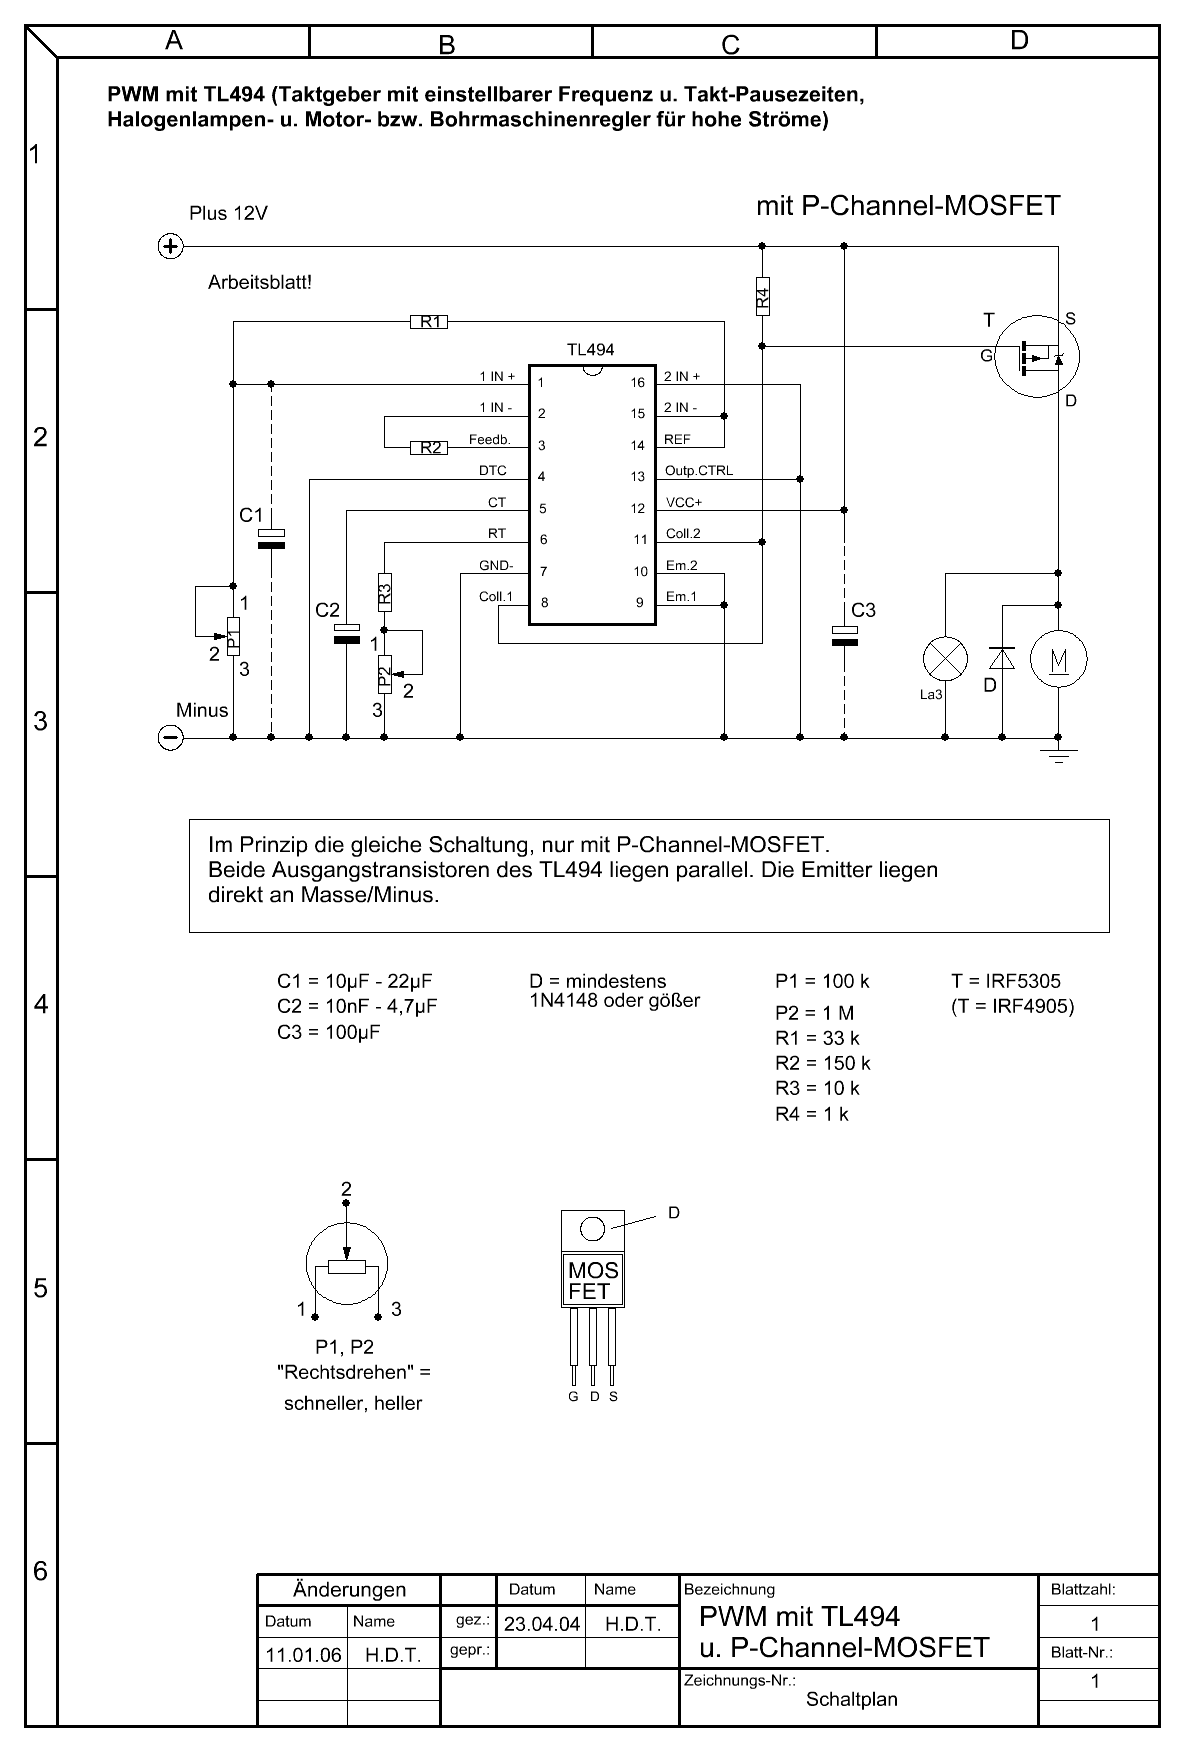 PWM-mit-TL494-und-P-Channel-MOSFET